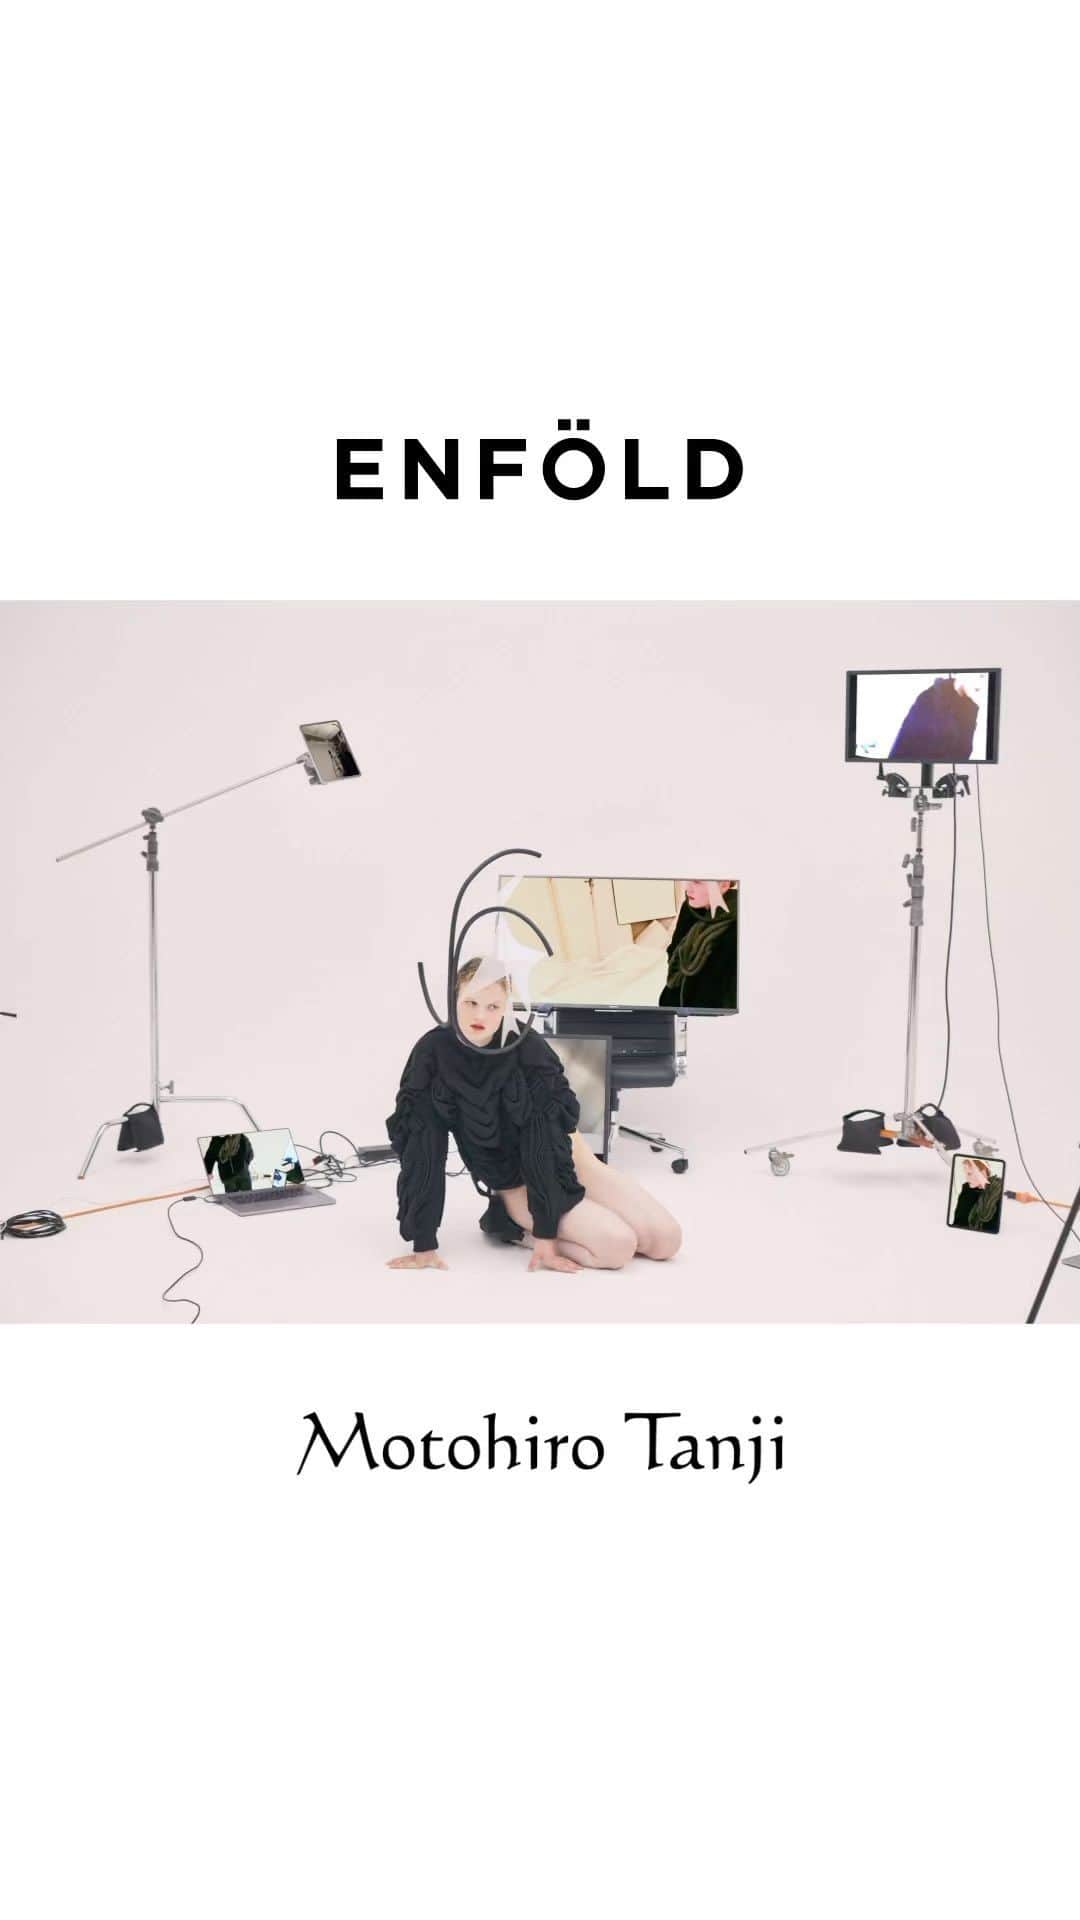 ENFÖLDのインスタグラム：「ENFÖLD × Motohiro Tanji( @motohirotanji.knit )  ENFÖLDとニットブランド｢MotohiroTanji｣の丹治基浩氏による コラボレーションをローンチいたします。 ENFÖLDデザインチームによって「皮膚」というテーマに基づきイメージされたデザインを、丹治基浩氏の高いニッティング技術を用いて、生々しくもモードで硬質なアイテムとして具現化されたコレクションになっています。  -  Theme: 皮膚  人間の「皮膚」の年齢とともに現れる変化に着目したコレクション。 弛んだり、皺が入ったり、膨らんだり、萎んだり、 生きていく上で皮膚に刻まれていくものは美しい。 歳を重ねることで自然と現れる皮膚の変化は、決してマイナスな要素ではなく、 ひとの日々の暮らし全てが体に施した、美しい彫刻であると捉えました。 このコレクションは歳を重ねた体の変化を美しく変換する、 ポジティブなメッセージでもあります。  -  丹治基浩 | Motohiro Tanji ( @motohirotanji.knit )  ニットの可能性を様々な方法で追及するニットデザイナー。 慶應義塾大学卒業後、ノッティンガムトレント大学  MAニットウェアデザイン科を首席で卒業。 卒業後、様々なメゾンにニットテキスタイルを提供する イギリスのAcorn Conceptual Textilesに勤務。 2012年イギリスから帰国後、2013年春夏シーズンに 自身の名を冠したブランドMotohiro Tanjiをスタートする。 ファッション、アート、自身が主催するニット教室、 衣装のニット制作など活動範囲は多岐にわたる。  -  "Skin"  Skin will sag, have wrinkles, swells, shrinks, and the beauty is that as time goes by, all of it carves into your skin. The changes in the skin that naturally appear with age are not negative features, but rather a beautiful sculpture made on the body by all aspects of a person's daily life.  This collection focuses on the changes that appear with age in the human skin.  It is designed to sculpt the fabric with organically rounded stitches, switching lines, and quilting to express the beauty of the skin. The wrinkles of the lily flower are photographed in close-up and printed on the entire surface to sublimate the wrinkles and sagging beautifully.  In addition, the collaboration item with the designer Motohiro Tanji from the knit brand "Motohiro Tanji" which uses advanced knitwear techniques to create a structured item with a vivid mode.  ENFÖLD 23FW collection contains a positive message that transformation of the aging body is a beautiful change in life.  -  "피부"  느슨해지고, 주름지고, 부풀고, 쪼그라드는 등, 살아가며 피부에 새겨지는 것들은 아름답습니다. 나이가 들어감에 따라 자연스레 나타나는 피부의 변화는 결코 부정적인 요소가 아닌, 일상이 몸에 새긴 아름다운 조각들입니다. 이번 컬렉션은 나이가 들며 인간의 ‘피부’에 나타나는 변화에 주목했습니다.  컬렉션은 유기적으로 둥글게 만든 스티치나 스위칭 라인, 퀼팅으로 원단을 조각하듯 디자인해 피부의 아름다움을 표현했습니다. 백합꽃의 주름을 확대해 촬영해 전면에 프린트한 아이템은 피부의 주름이나 처짐을 아름답게 승화합니다.  또한, 자신의 이름을 딴 니트 브랜드의 디자이너 모토히로 탄지와의 협업 제품은 고도의 니트 테크닉을 사용해 생동감 넘치면서도 탄탄하게 완성됐습니다.  ENFÖLD 23FW 컬렉션은 나이를 먹어가며 나타나는 몸의 변화는 곧 삶의 아름다운 변화라는 긍정적인 메시지를 담고 있습니다.  #enfold_official  #enfold #enföld」